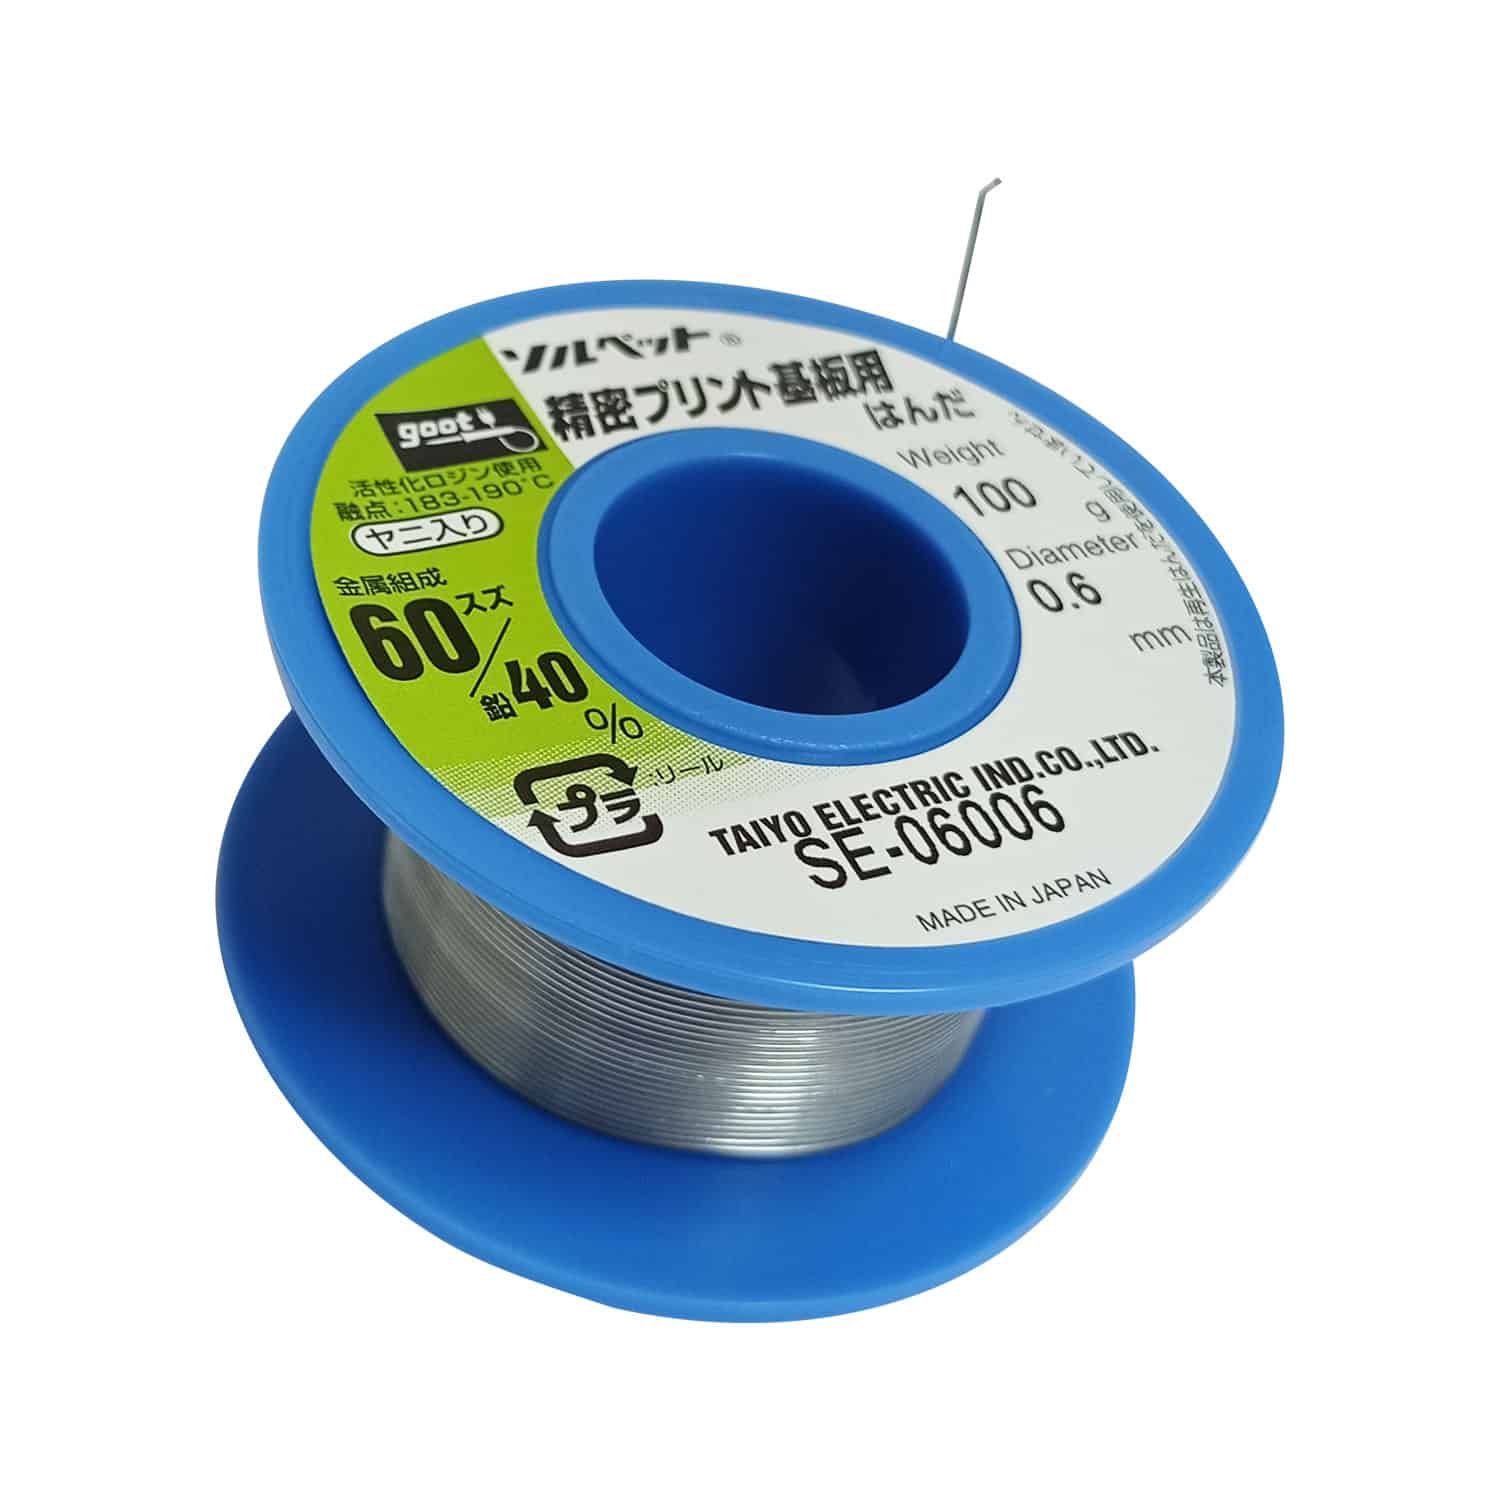 WYCTIN 60 – 40 alambre de estaño y plomo con núcleo de resina para  soldadura eléctrica y manualidades 0.0236 pulgadas (0.6 mm) 0.11 lb.